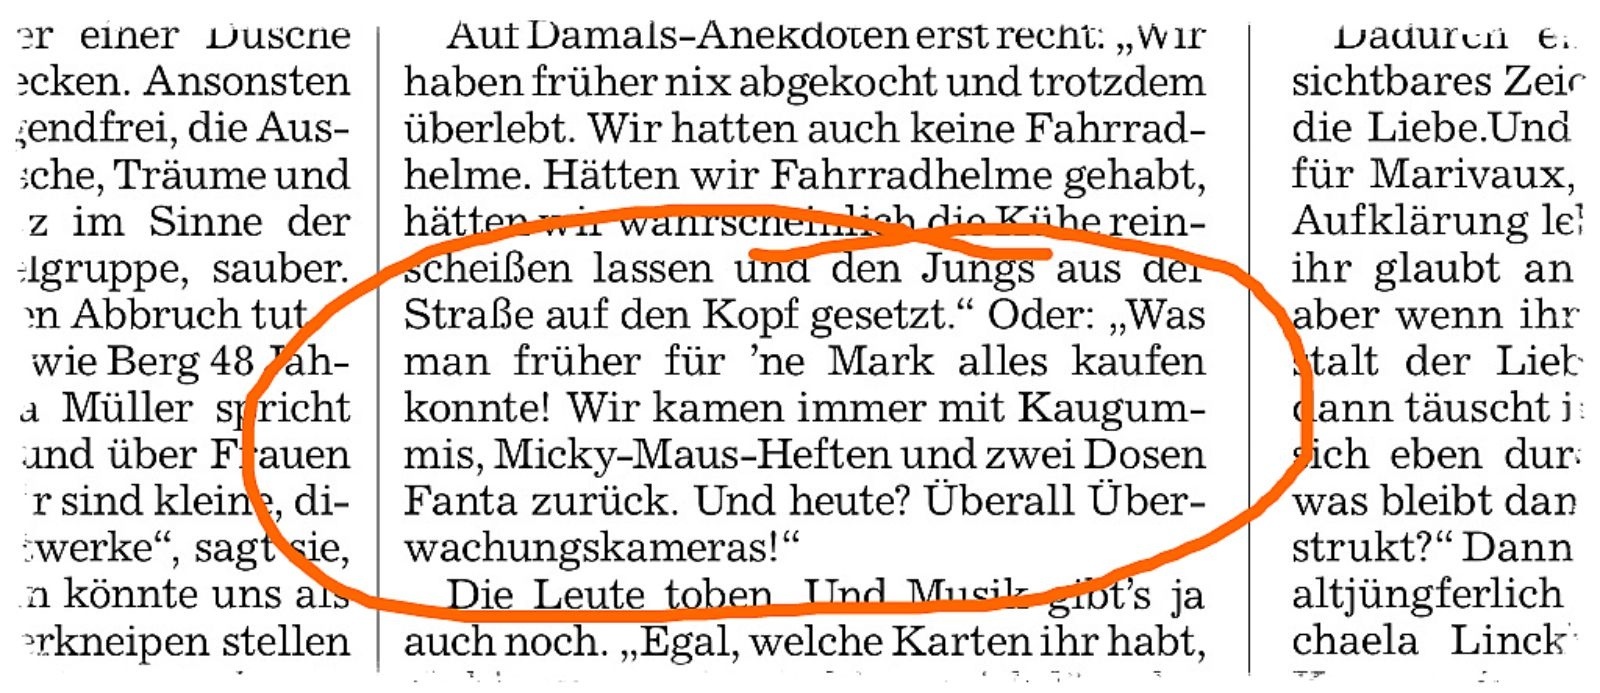 Quelle: Hannoversche Allgemeine Zeitung vom 03.02.2014